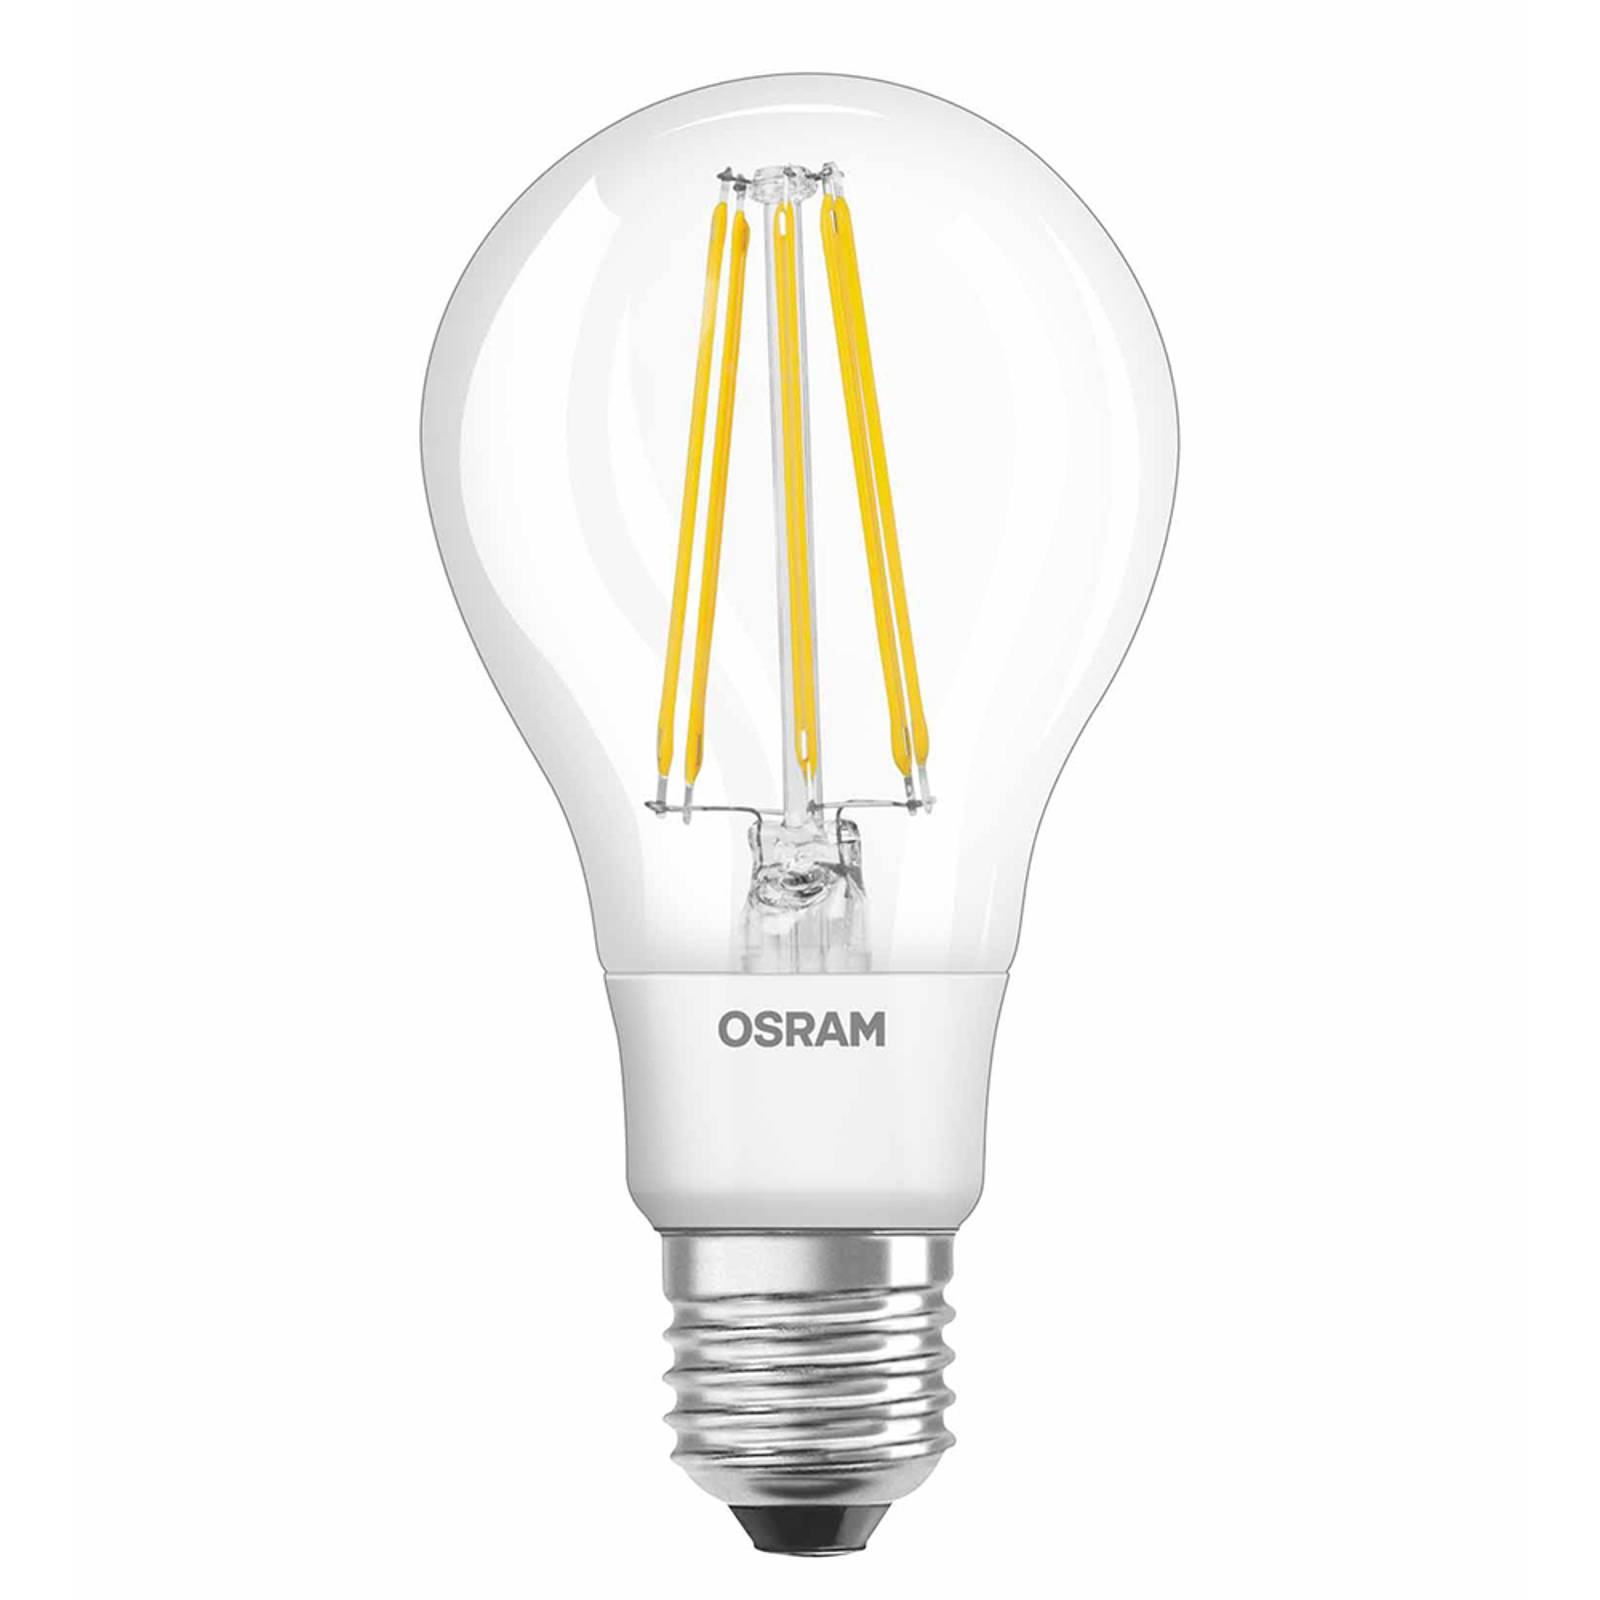 OSRAM-LED-lamppu E27 10W 827 filament